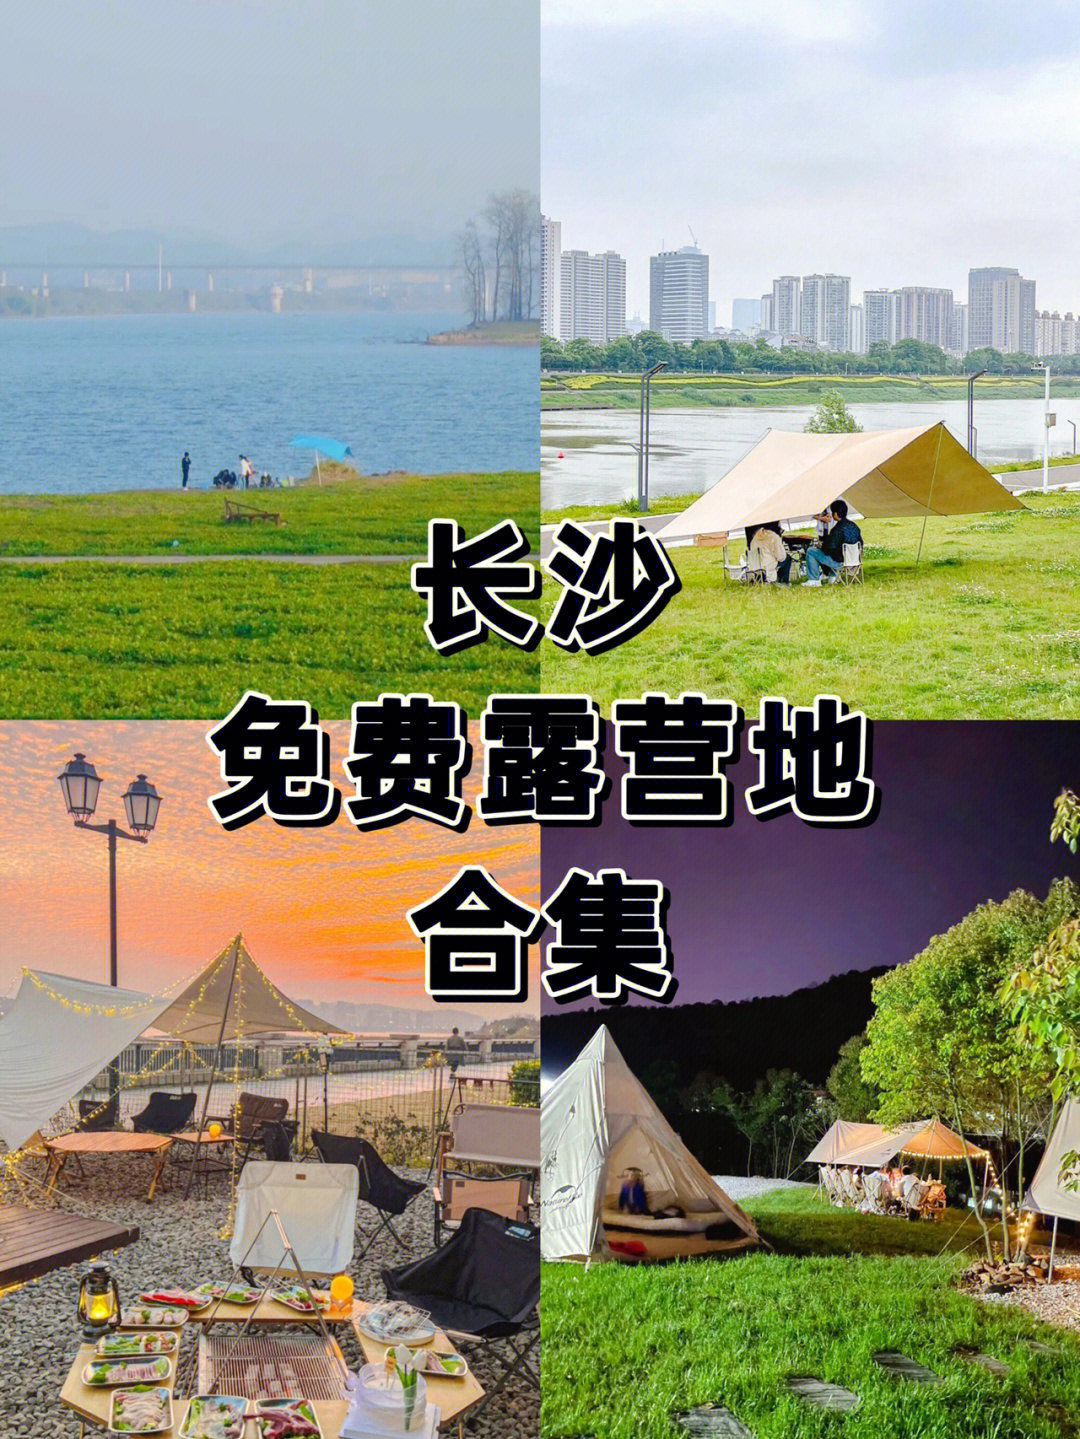 乌川湖风景区门票图片